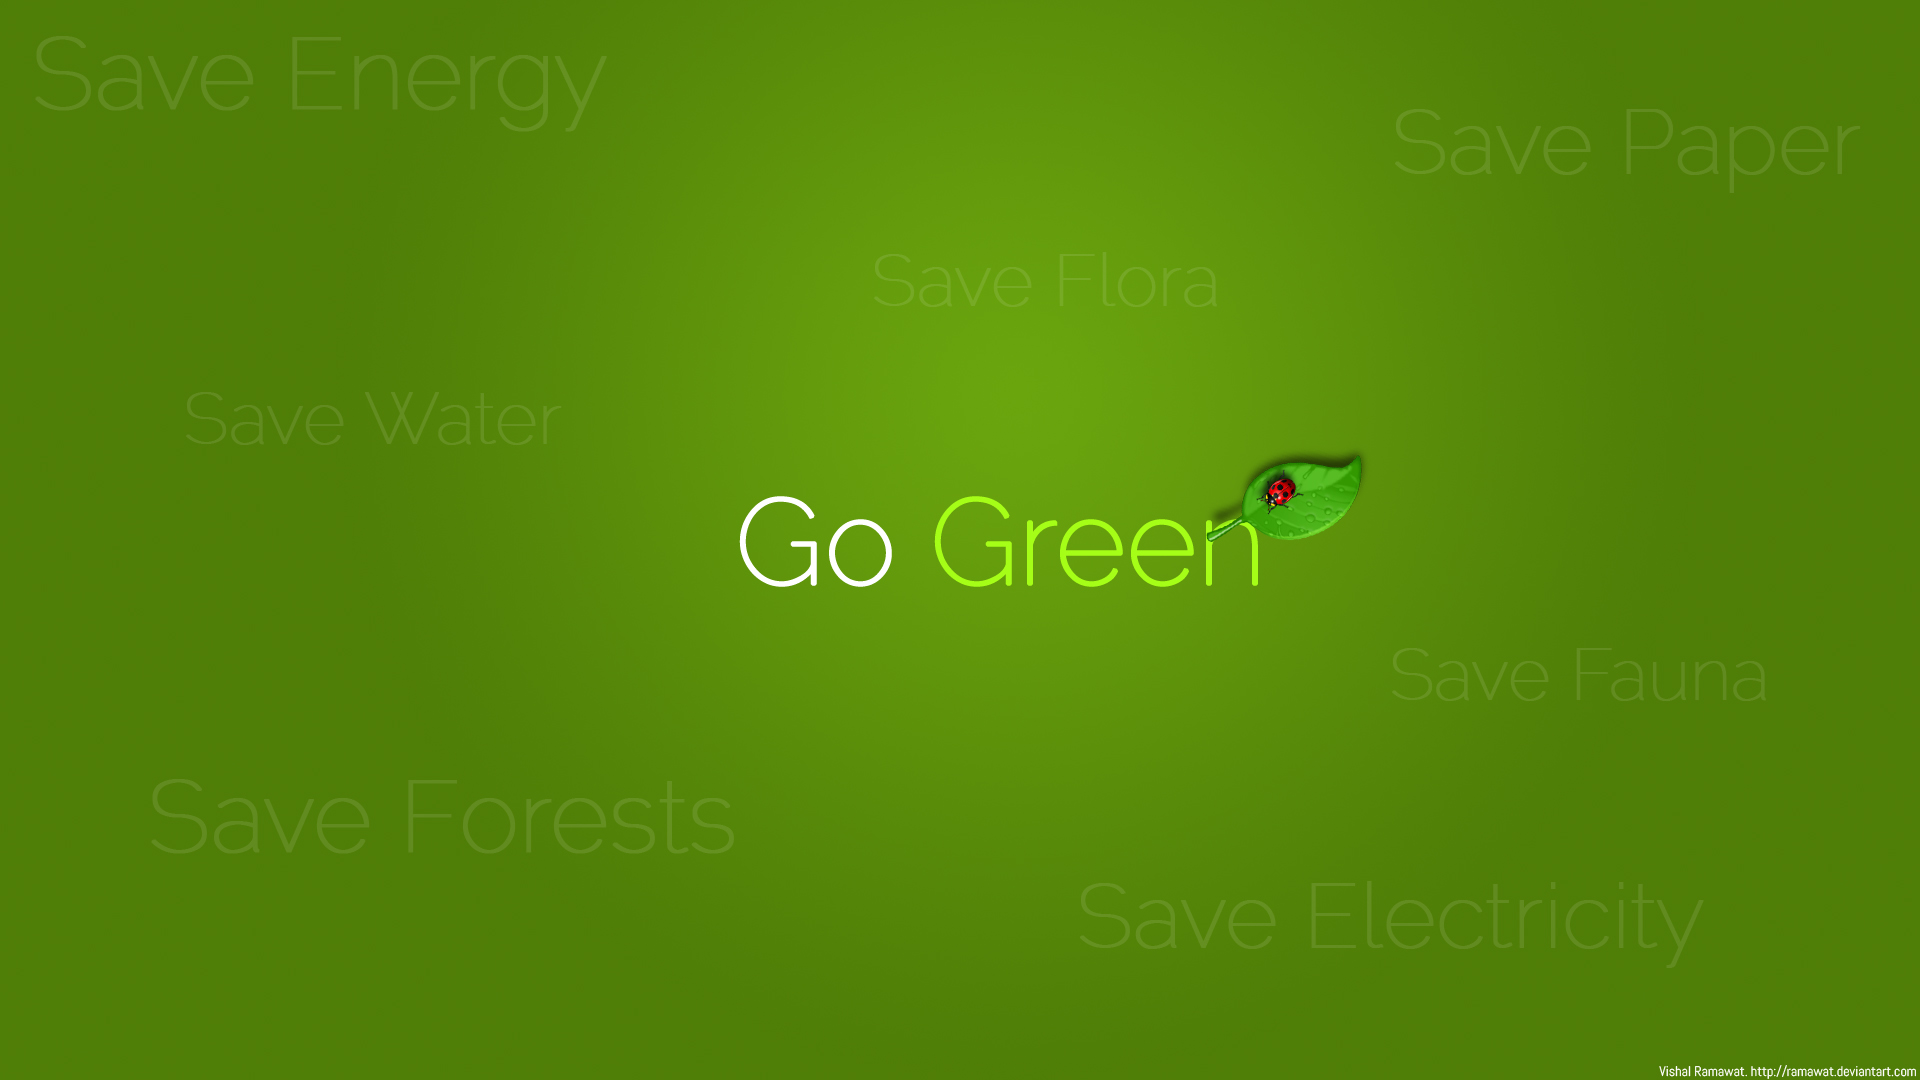 Go-Green adalah suatu gerakan yang bertujuan melestarikan dan menciptakan suasana lingkungan ... 